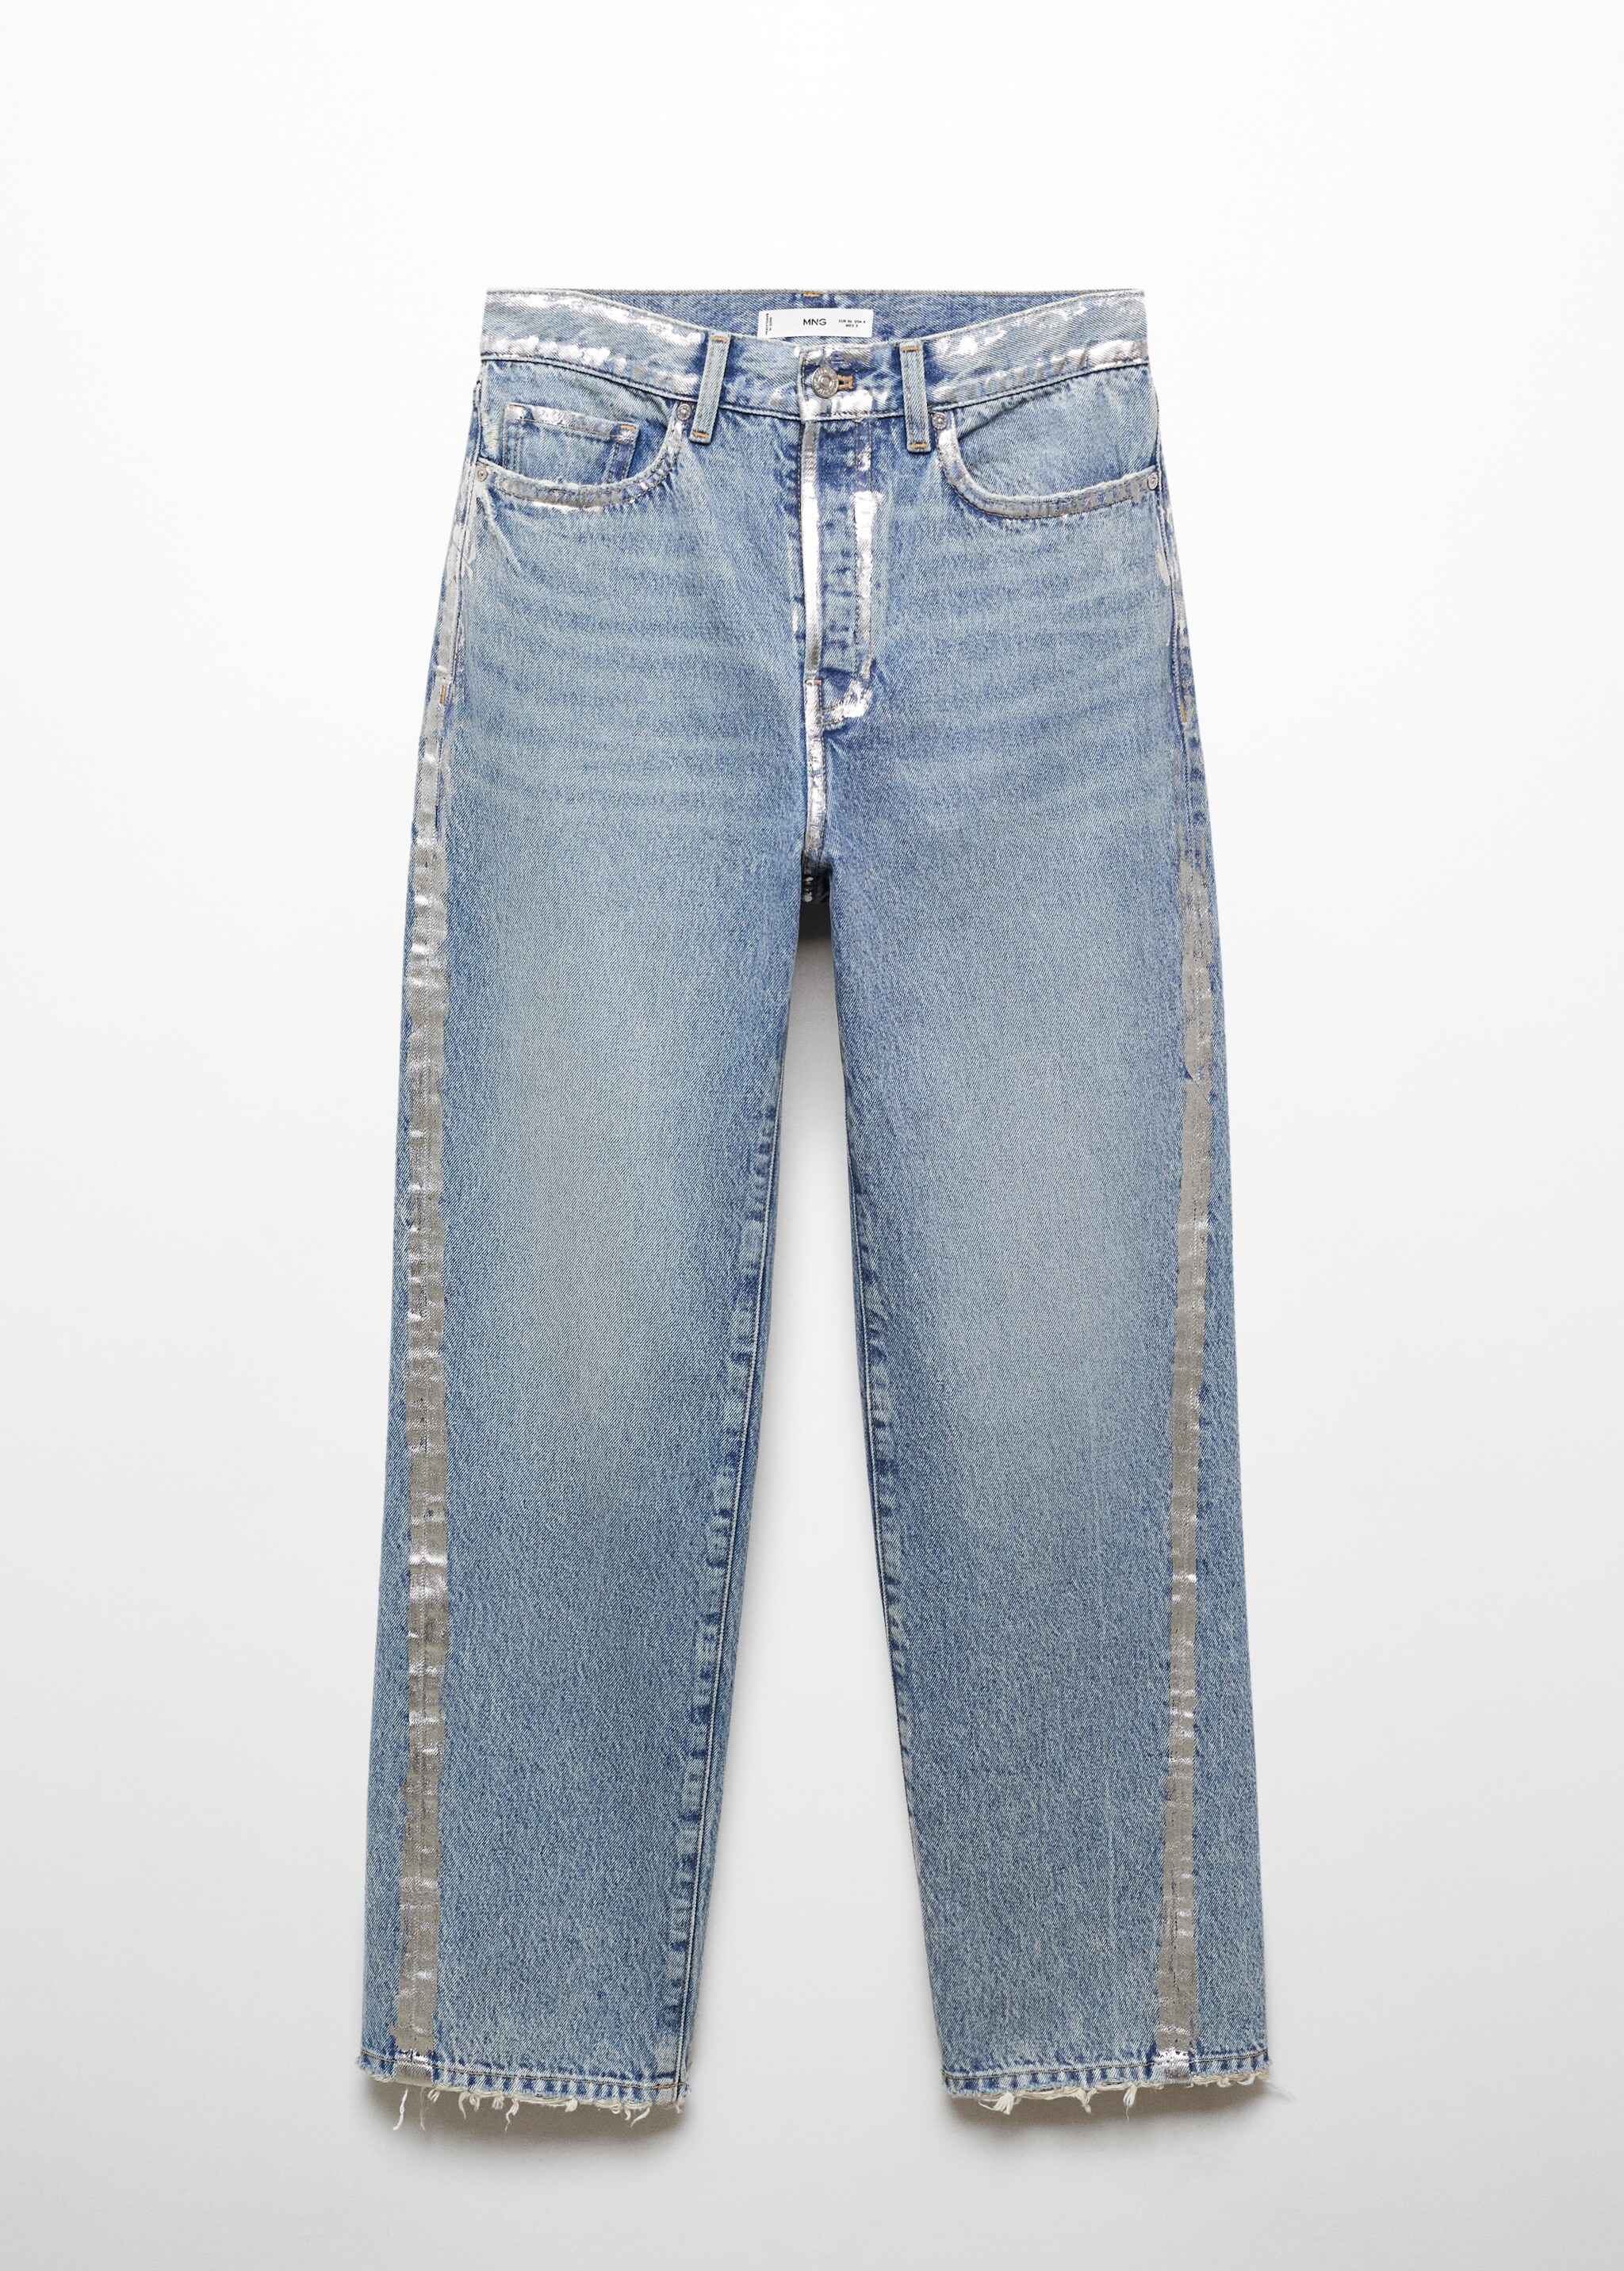 Jeans rectos detalles foil - Artículo sin modelo